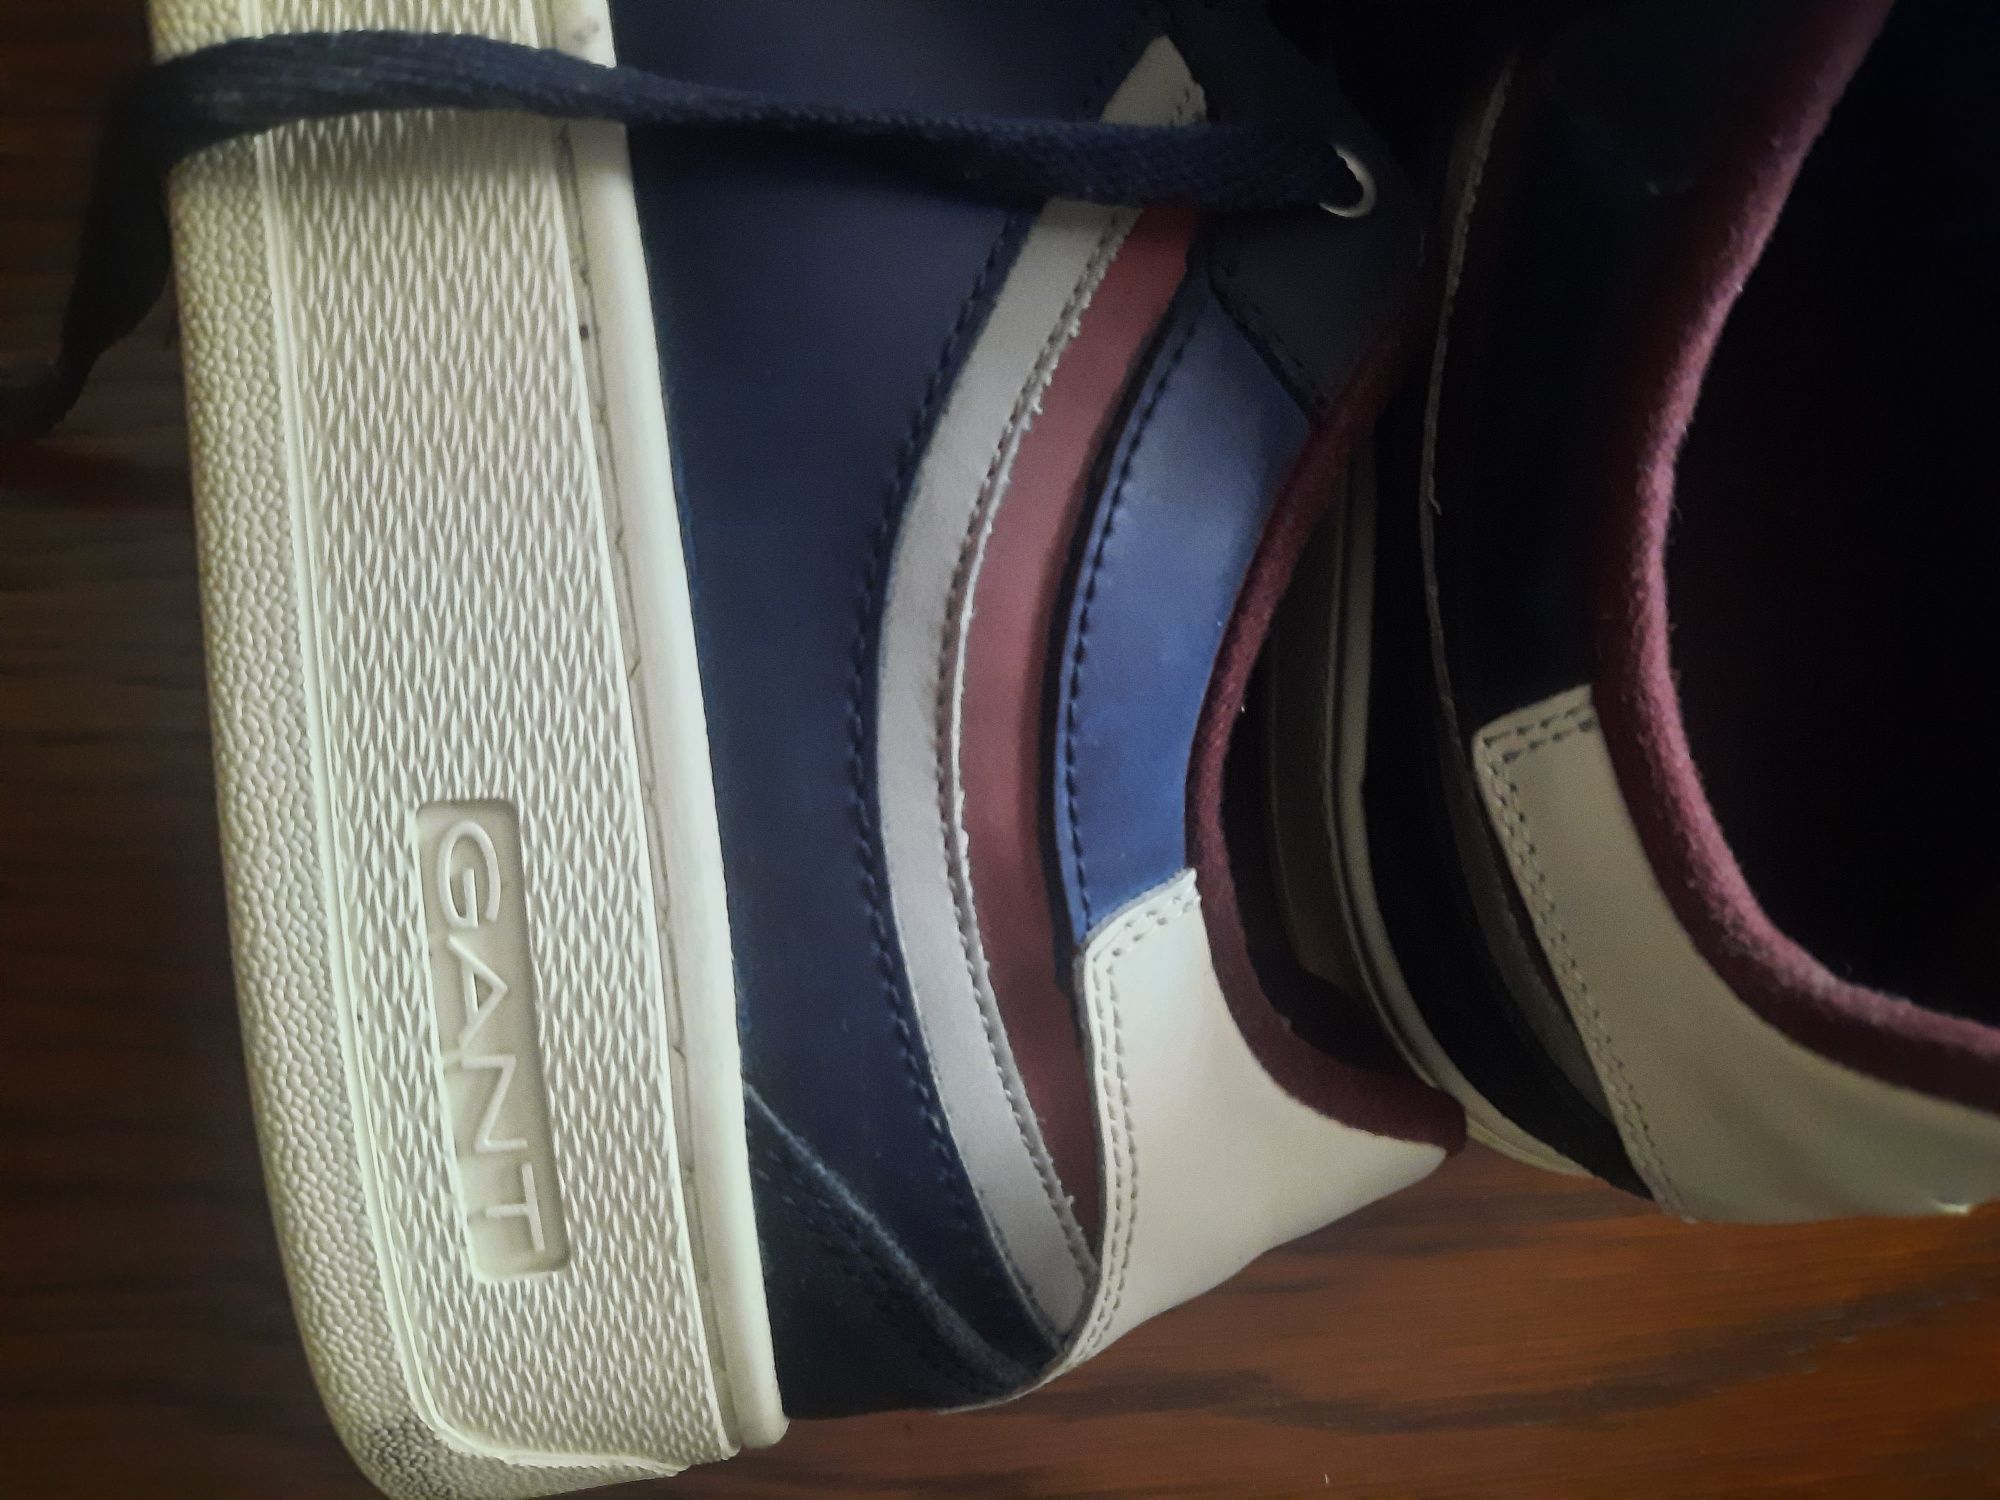 Pantofi sport Gant, din piele, low-cut ,Mc. Julien, bleumarin, mar.46.